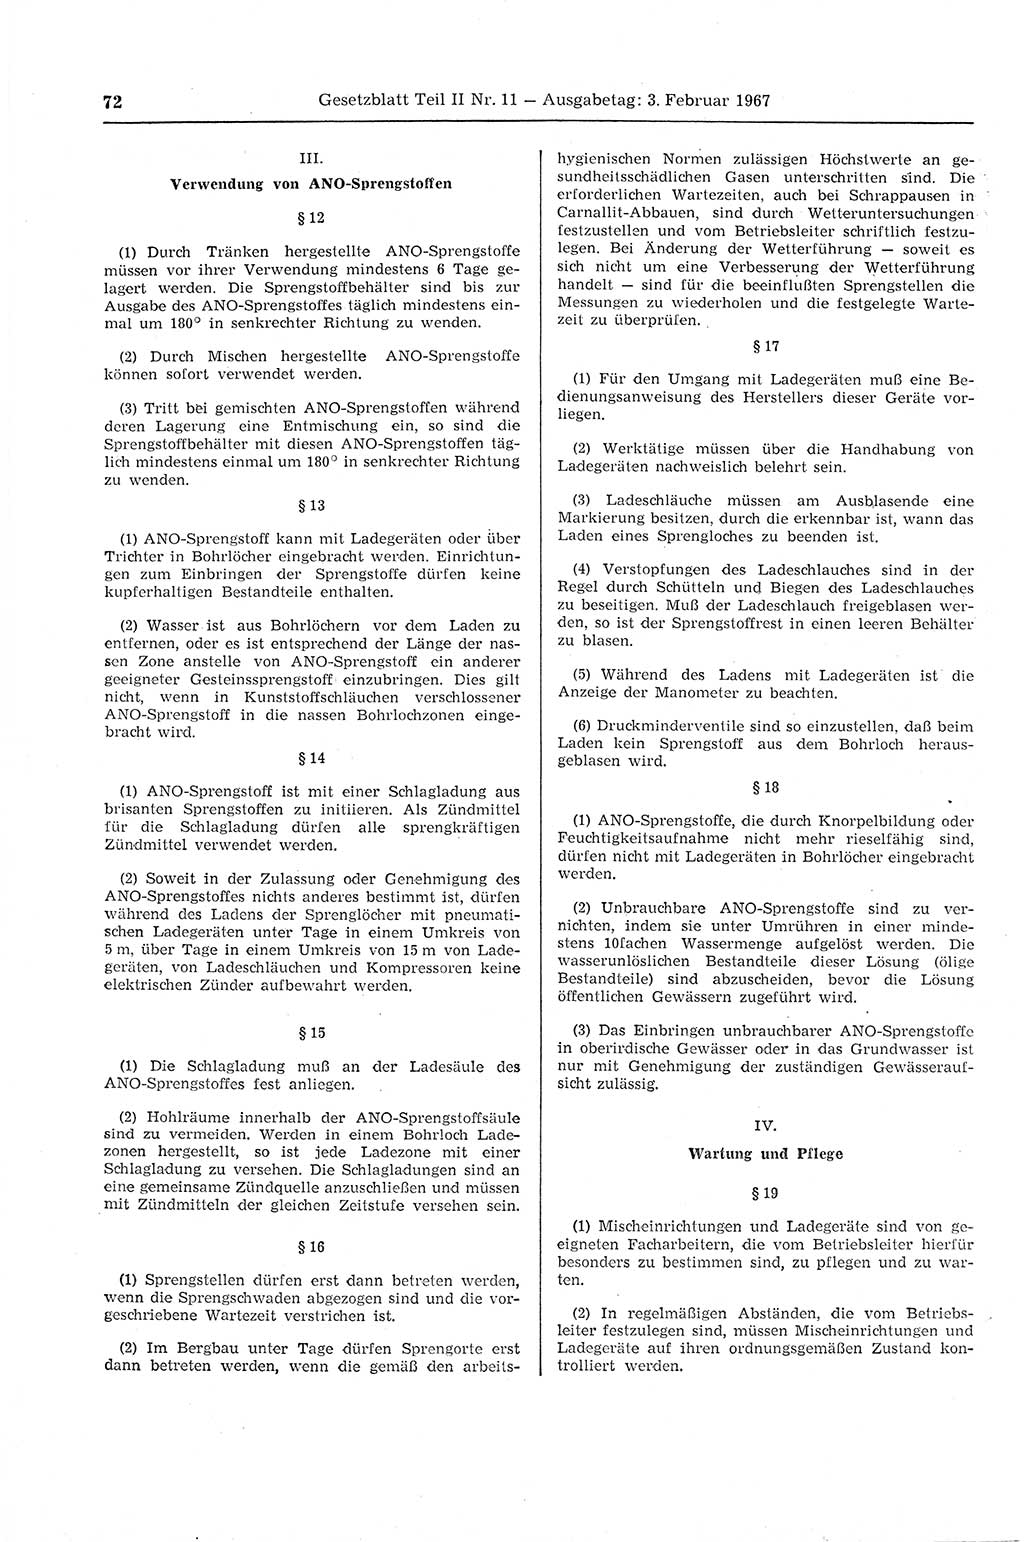 Gesetzblatt (GBl.) der Deutschen Demokratischen Republik (DDR) Teil ⅠⅠ 1967, Seite 72 (GBl. DDR ⅠⅠ 1967, S. 72)